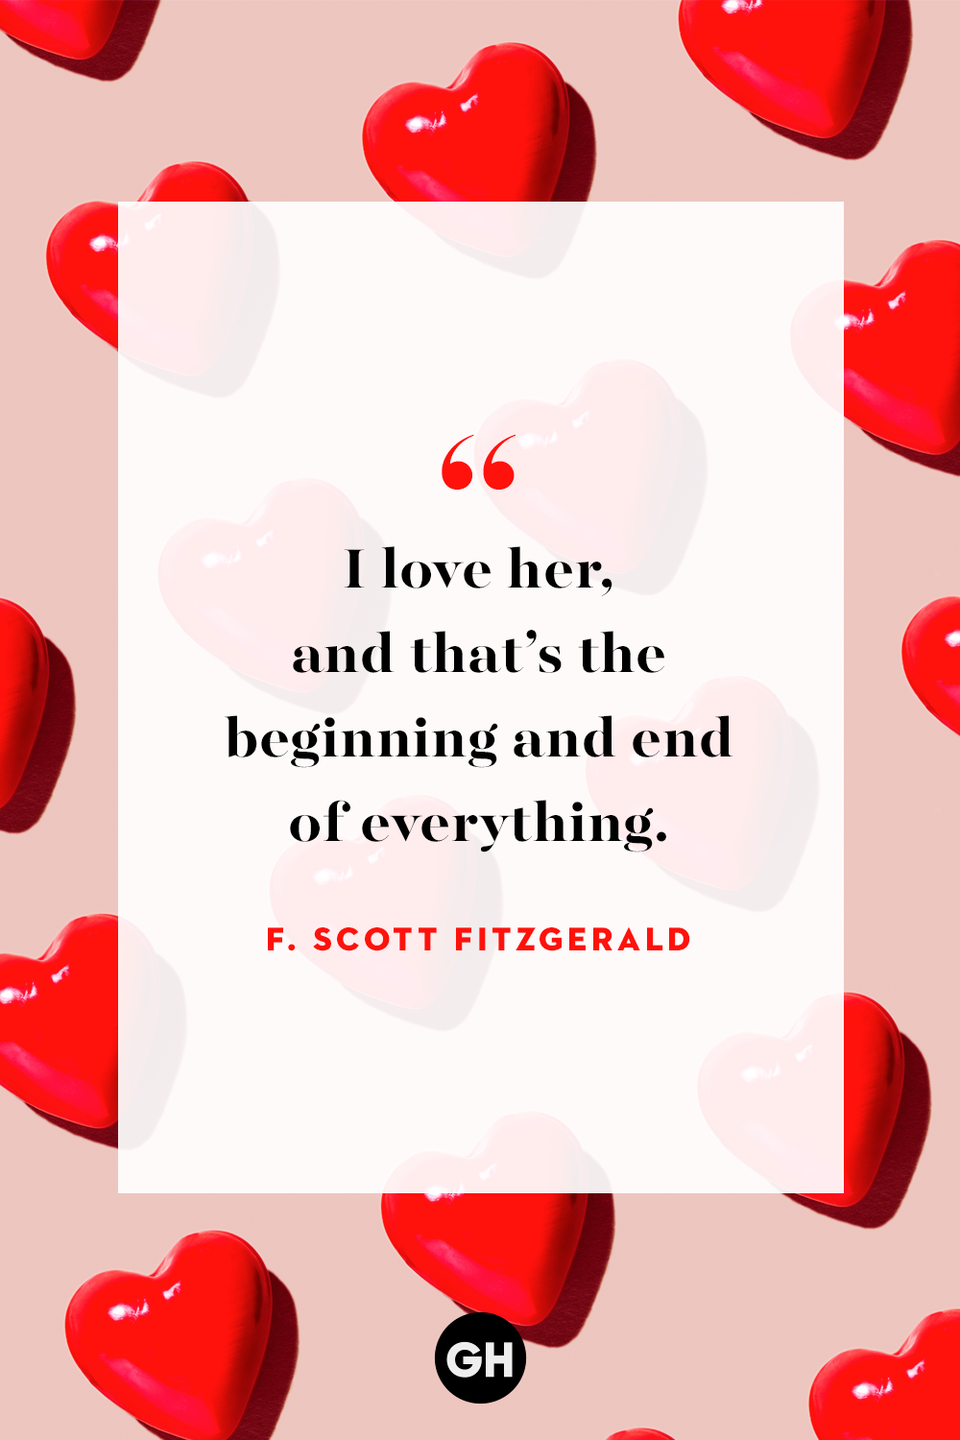 12) F. Scott Fitzgerald